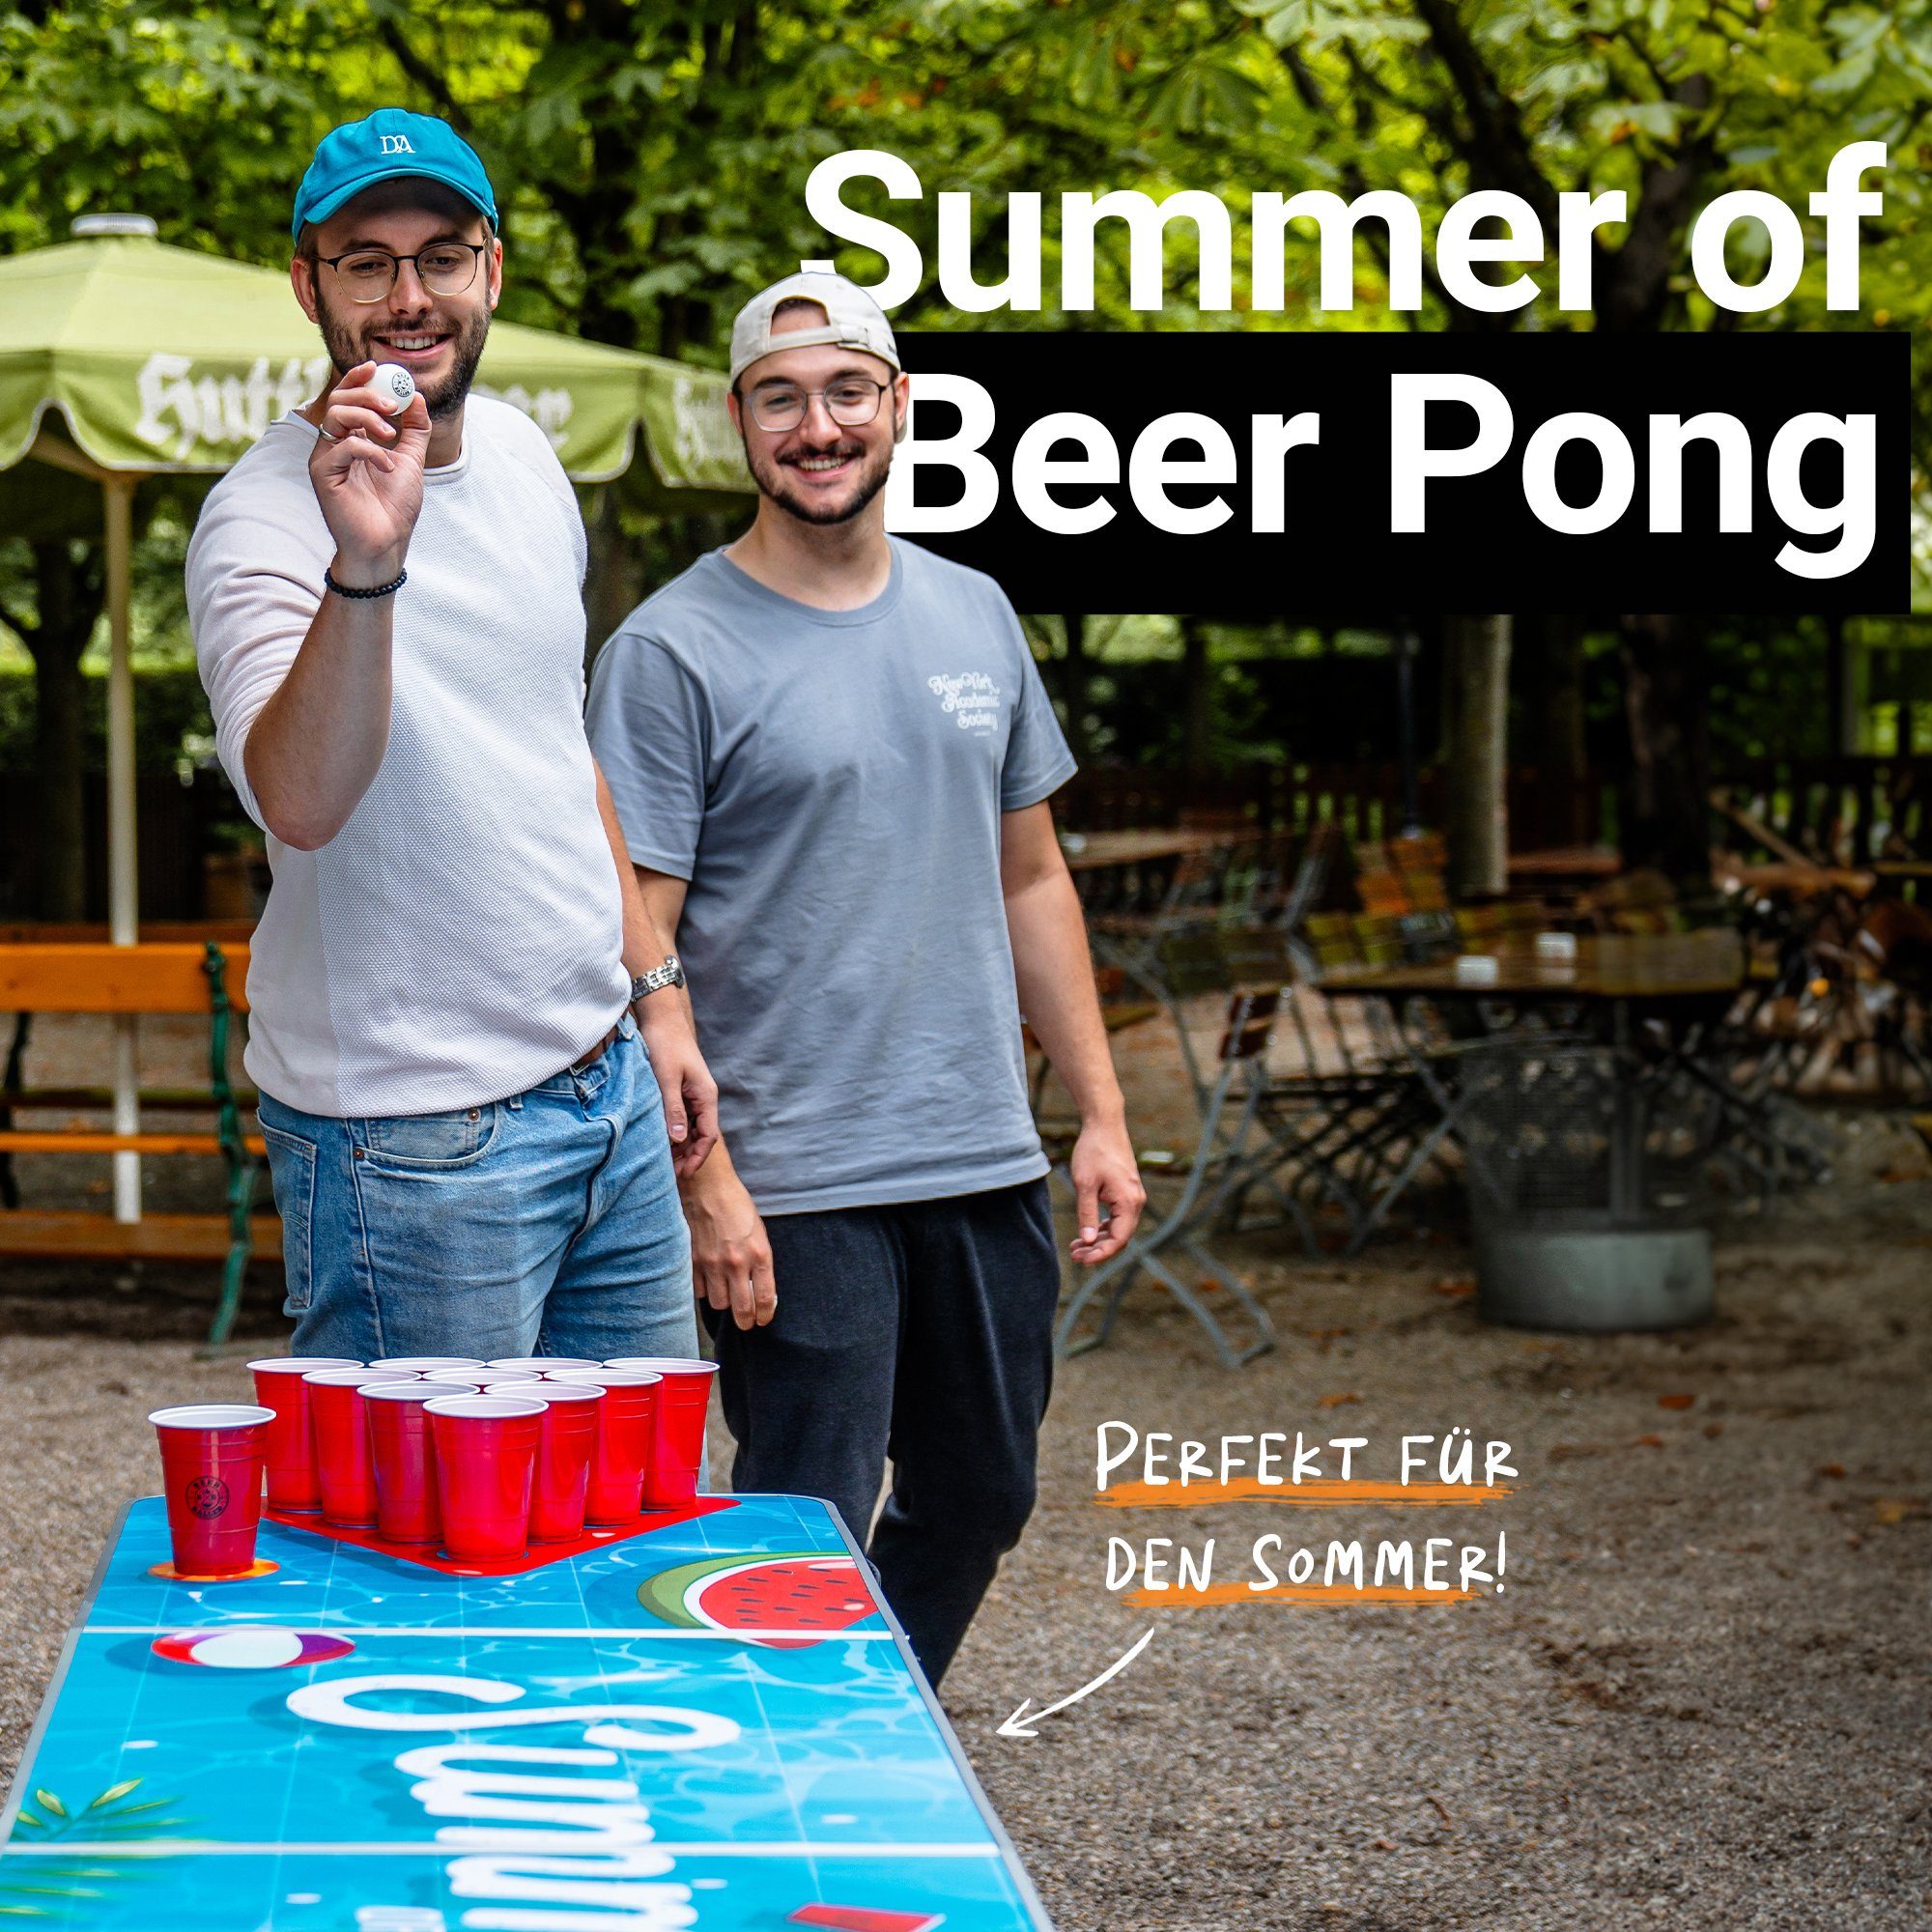 Summer Klapptisch BeerBaller Tisch Pong Beer BEERBALLER®